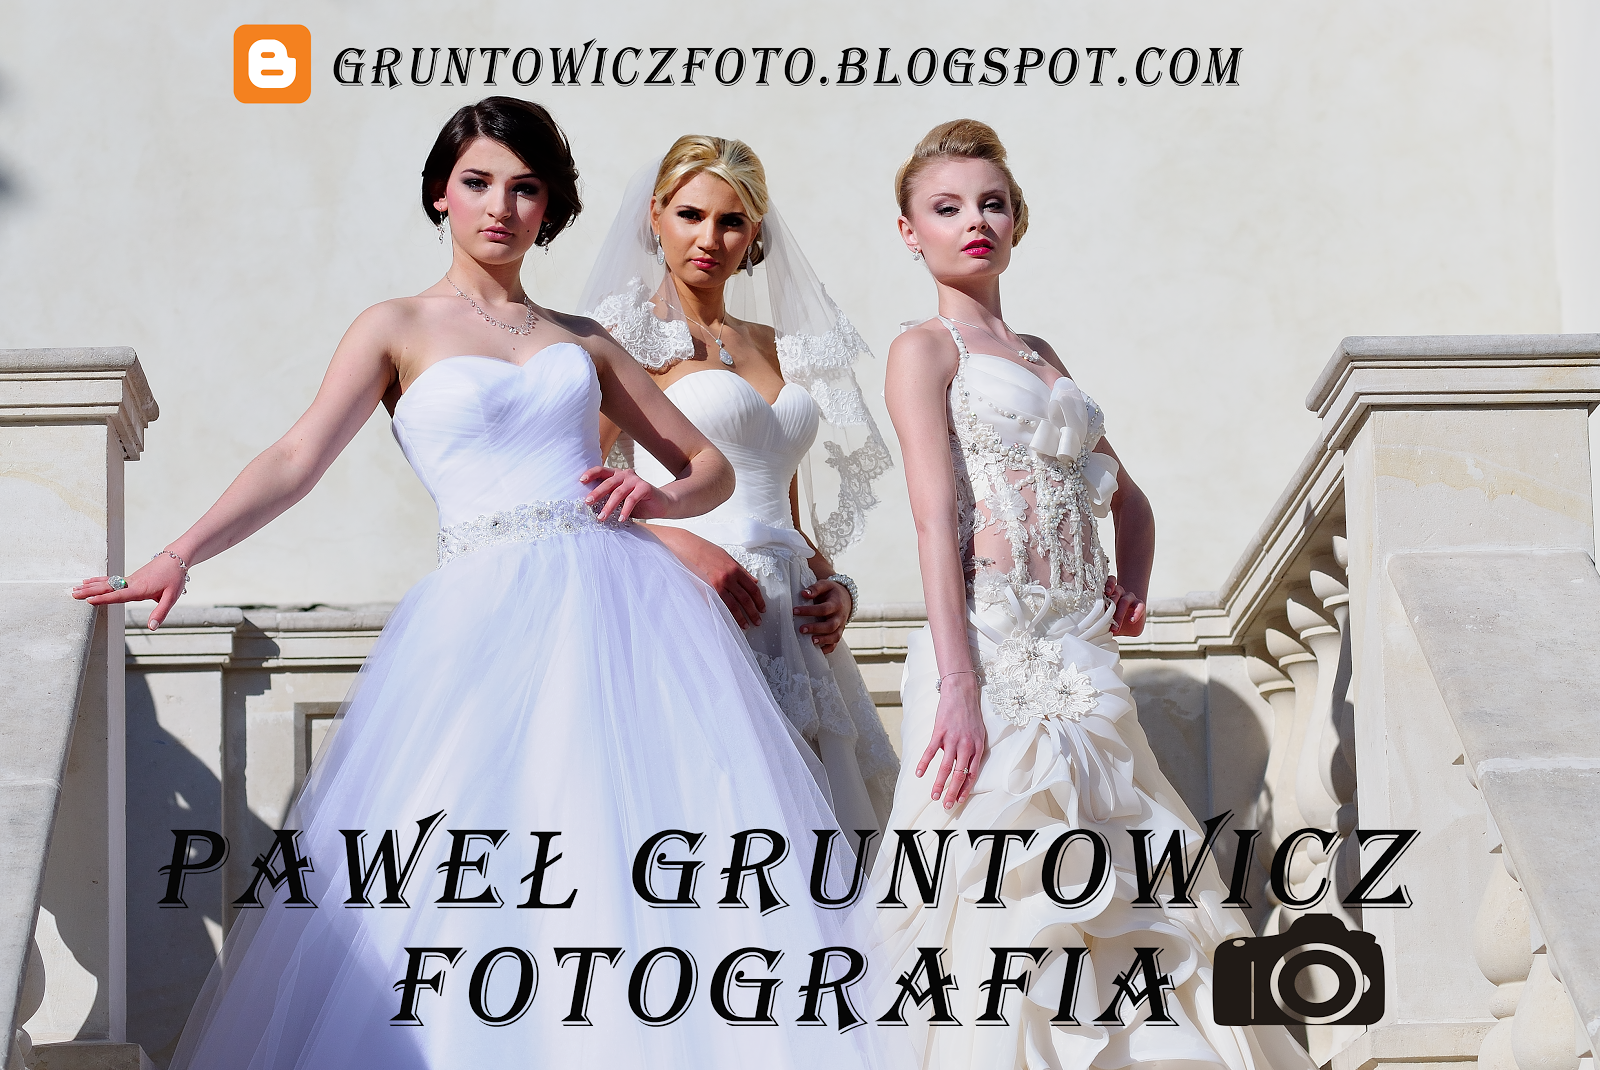 <center><strong>Paweł Gruntowicz Fotografia</strong></center>